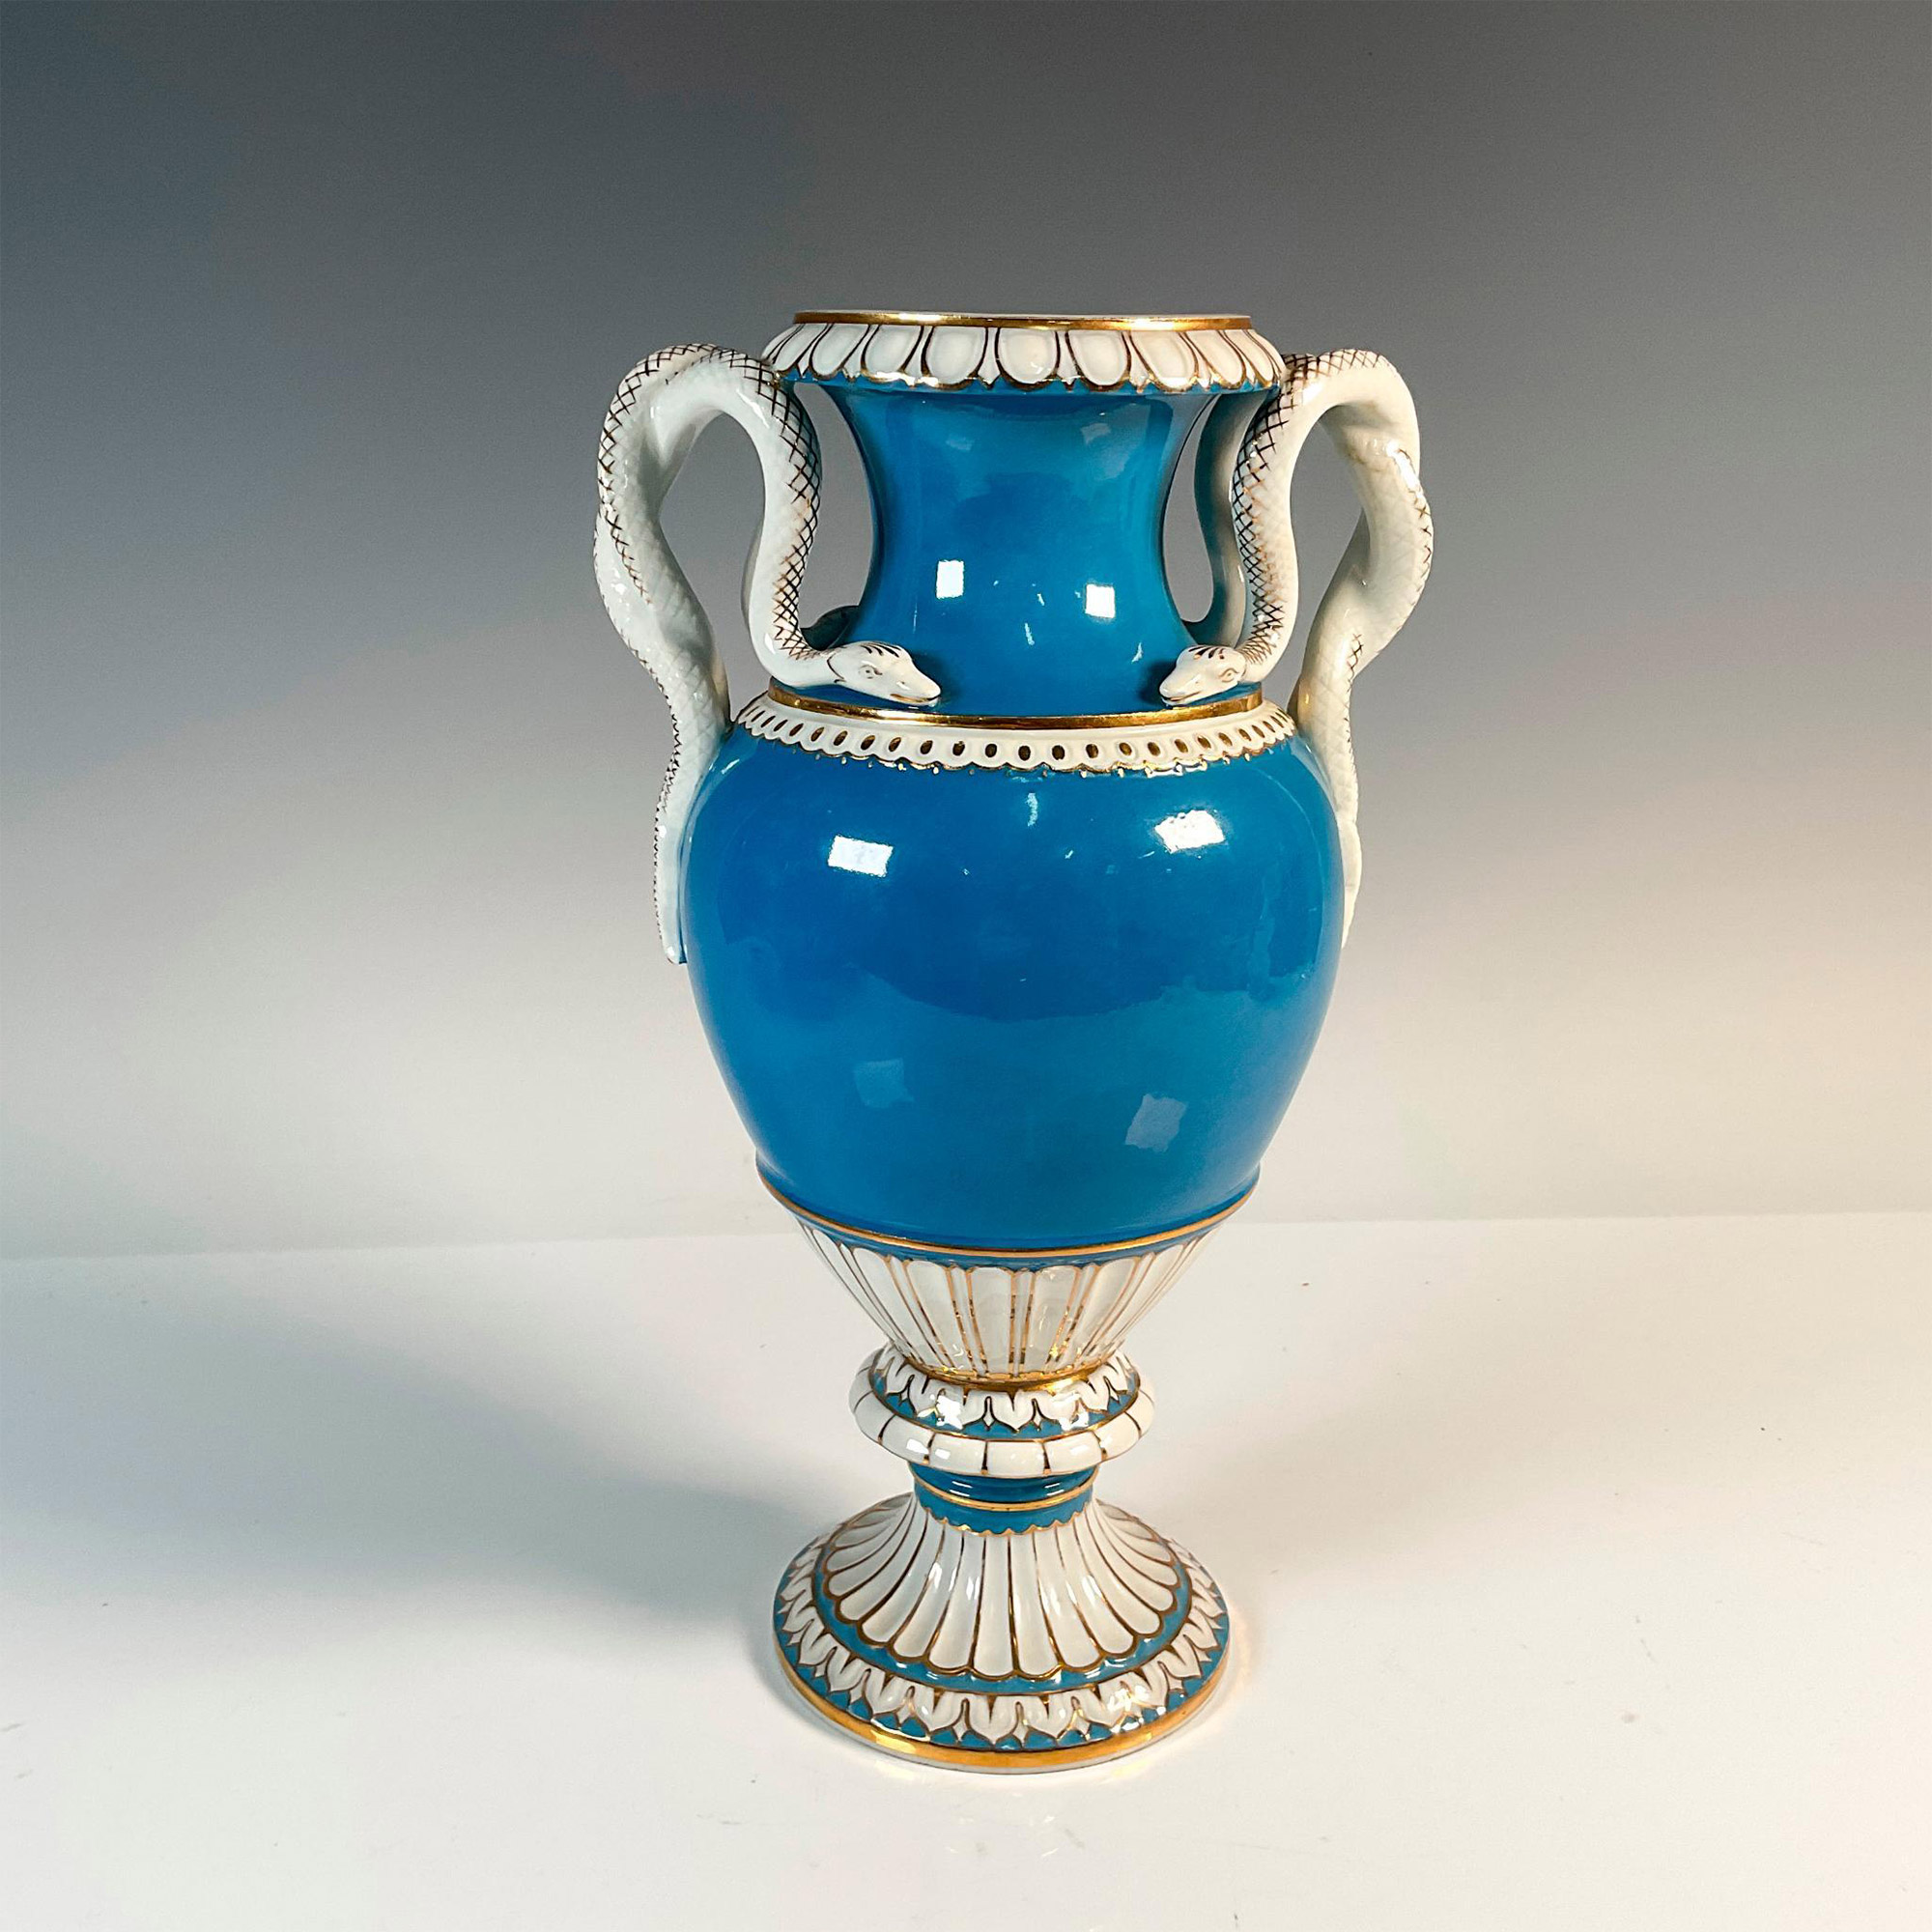 Meissen Porcelain Urn Vase with Snake Handles - Image 2 of 3